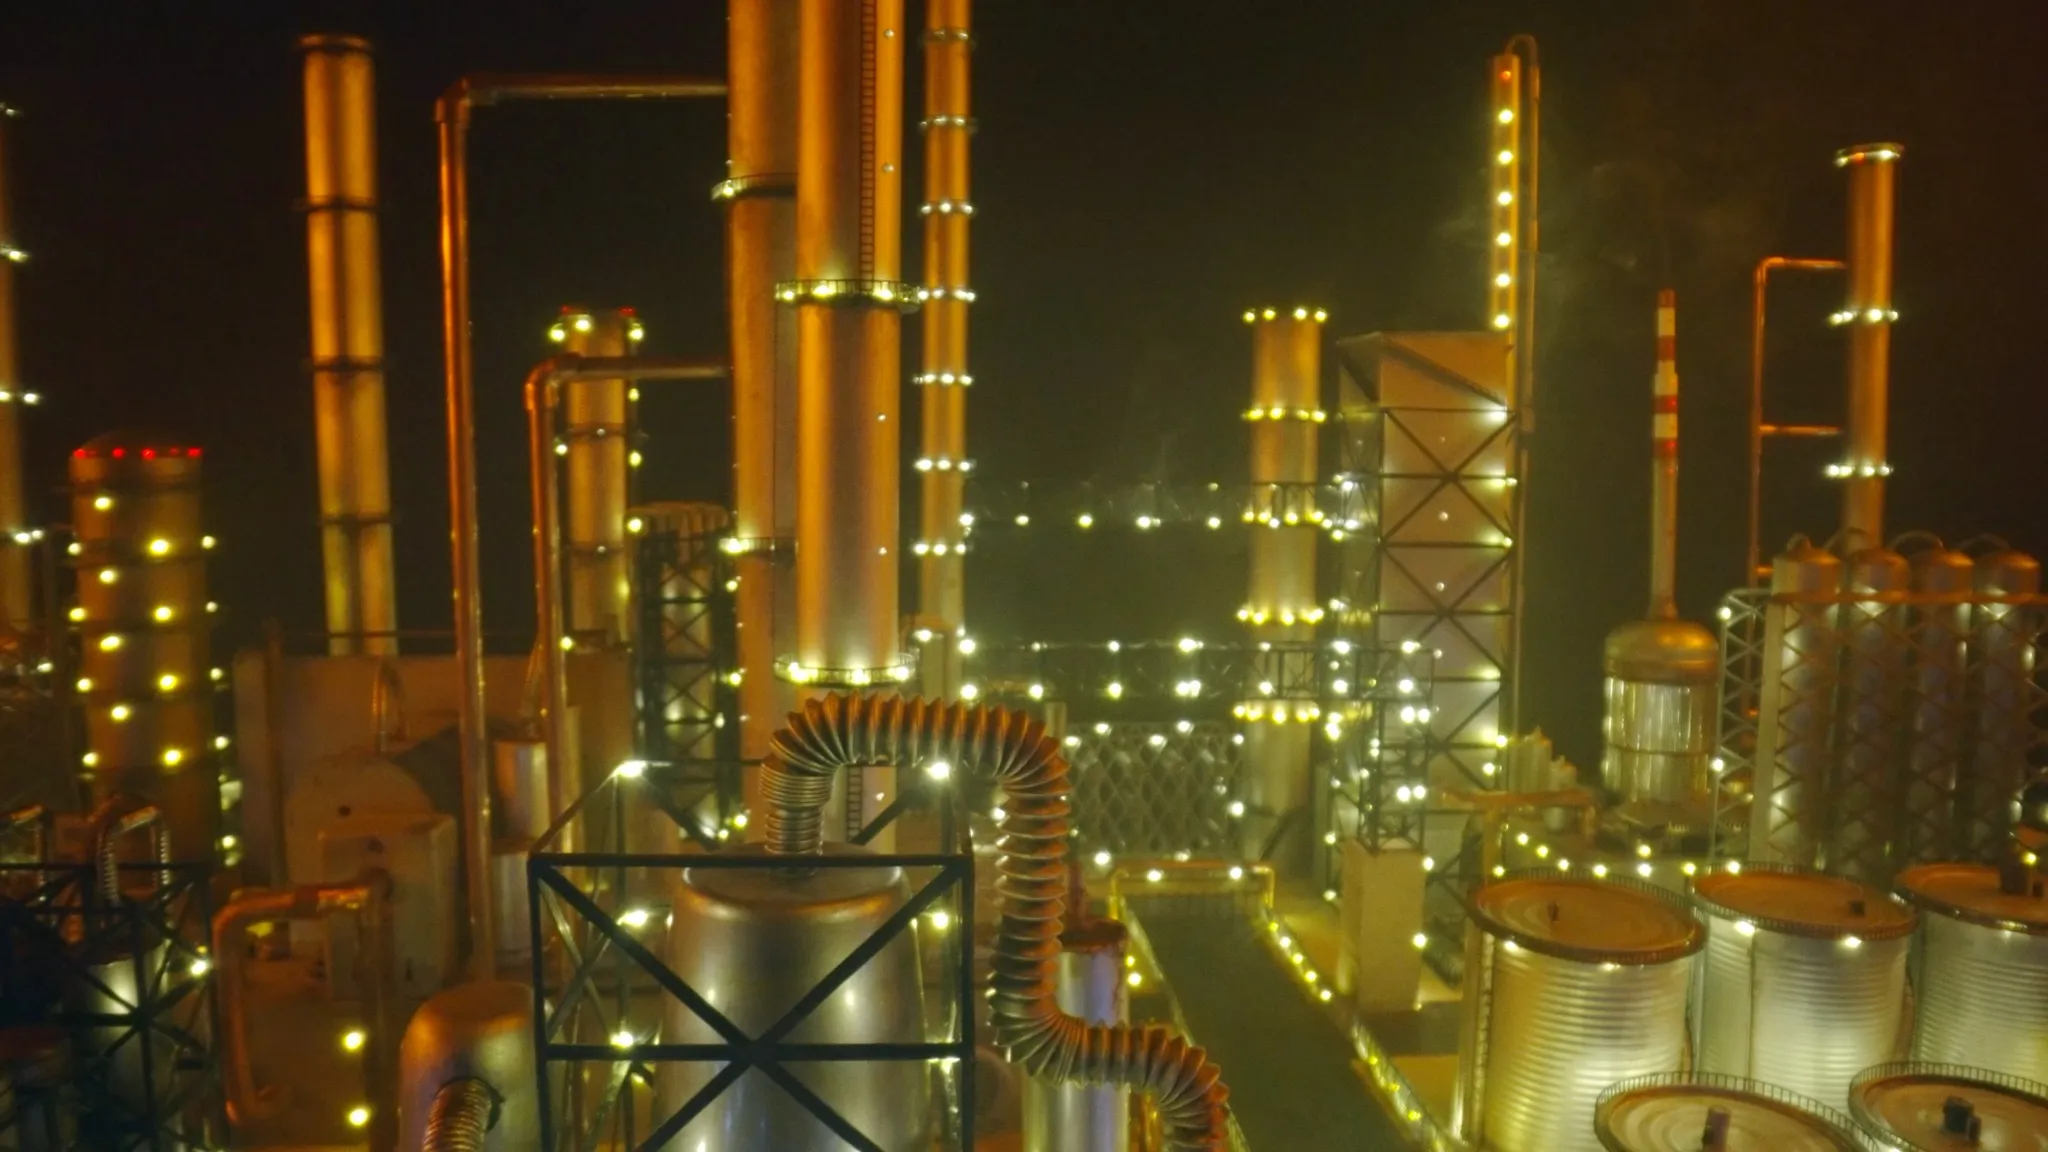 Een olieraffinaderij-industriegebied dat 's nachts verlicht is, gehuld in een sfeervolle oranje gloed te midden van een nevelige omgeving.